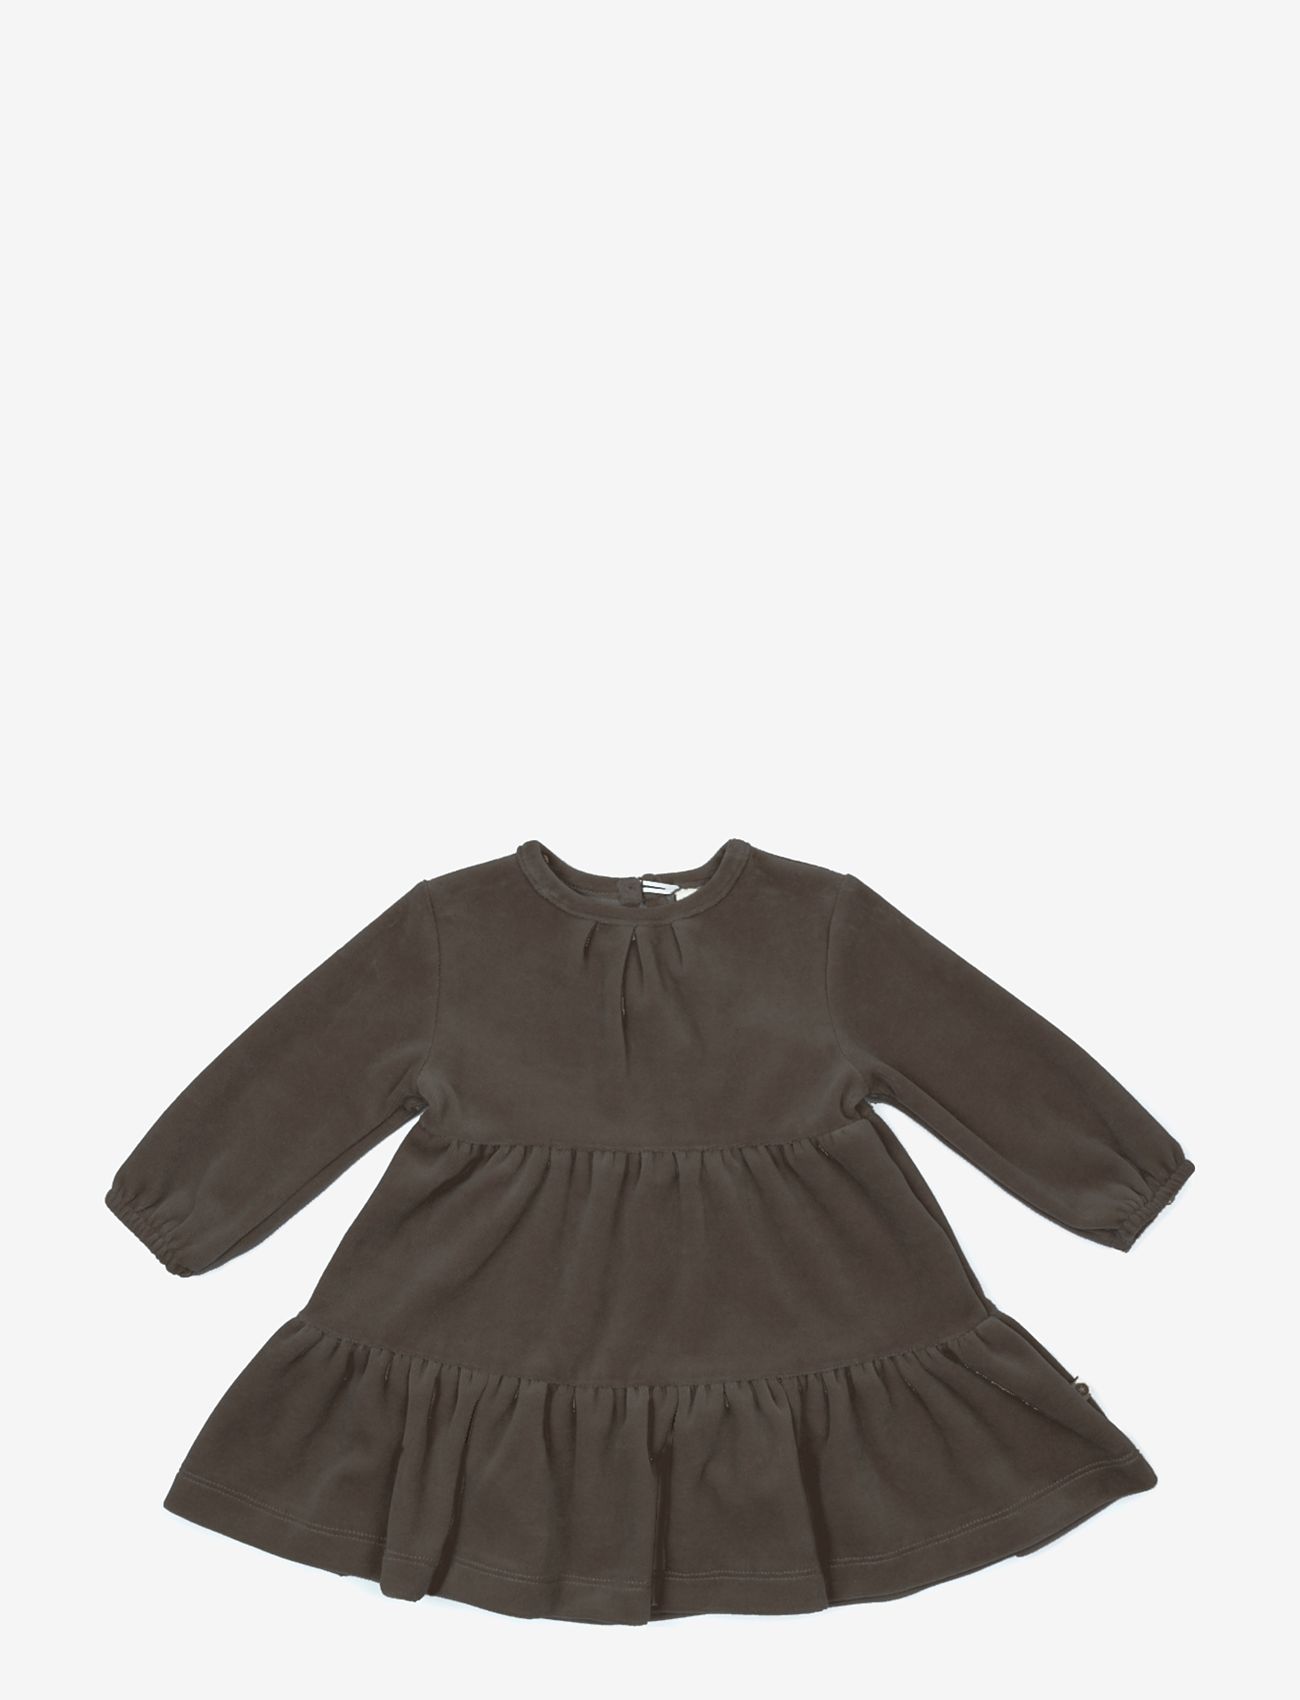 Smallstuff - Dress velour, dark mole - vakarinės suknelės - dark mole - 0